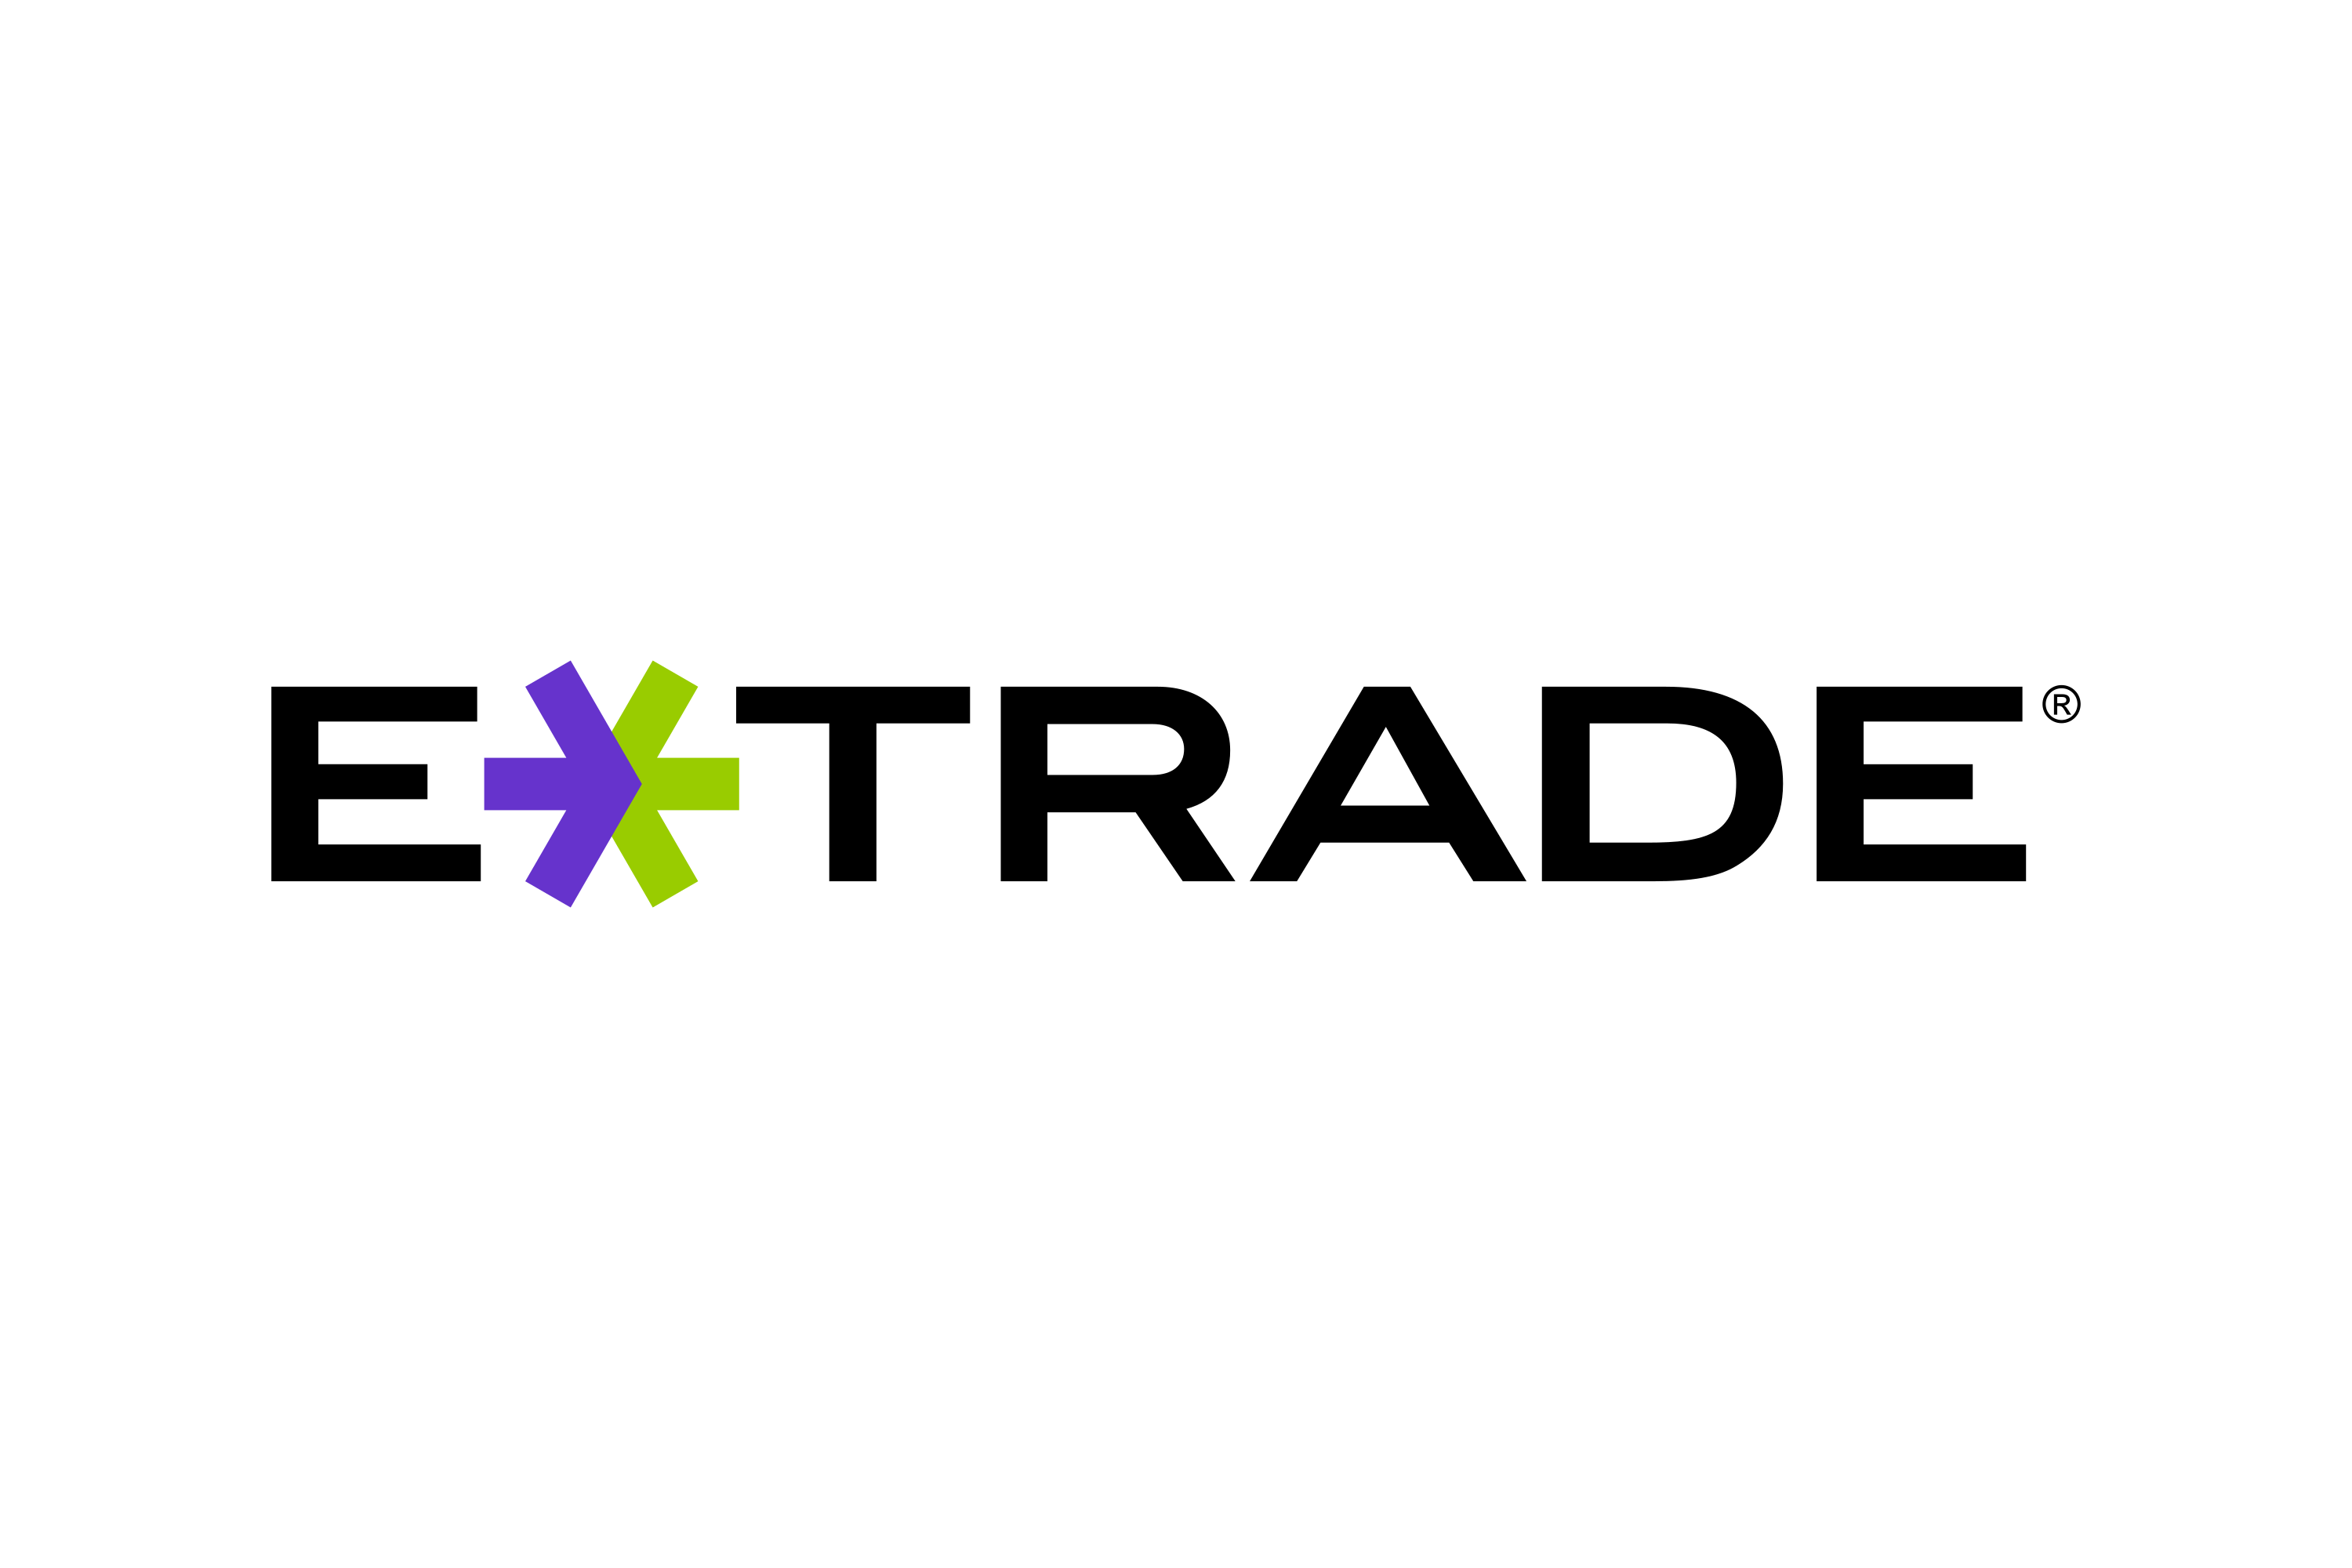 E-Trade Logo